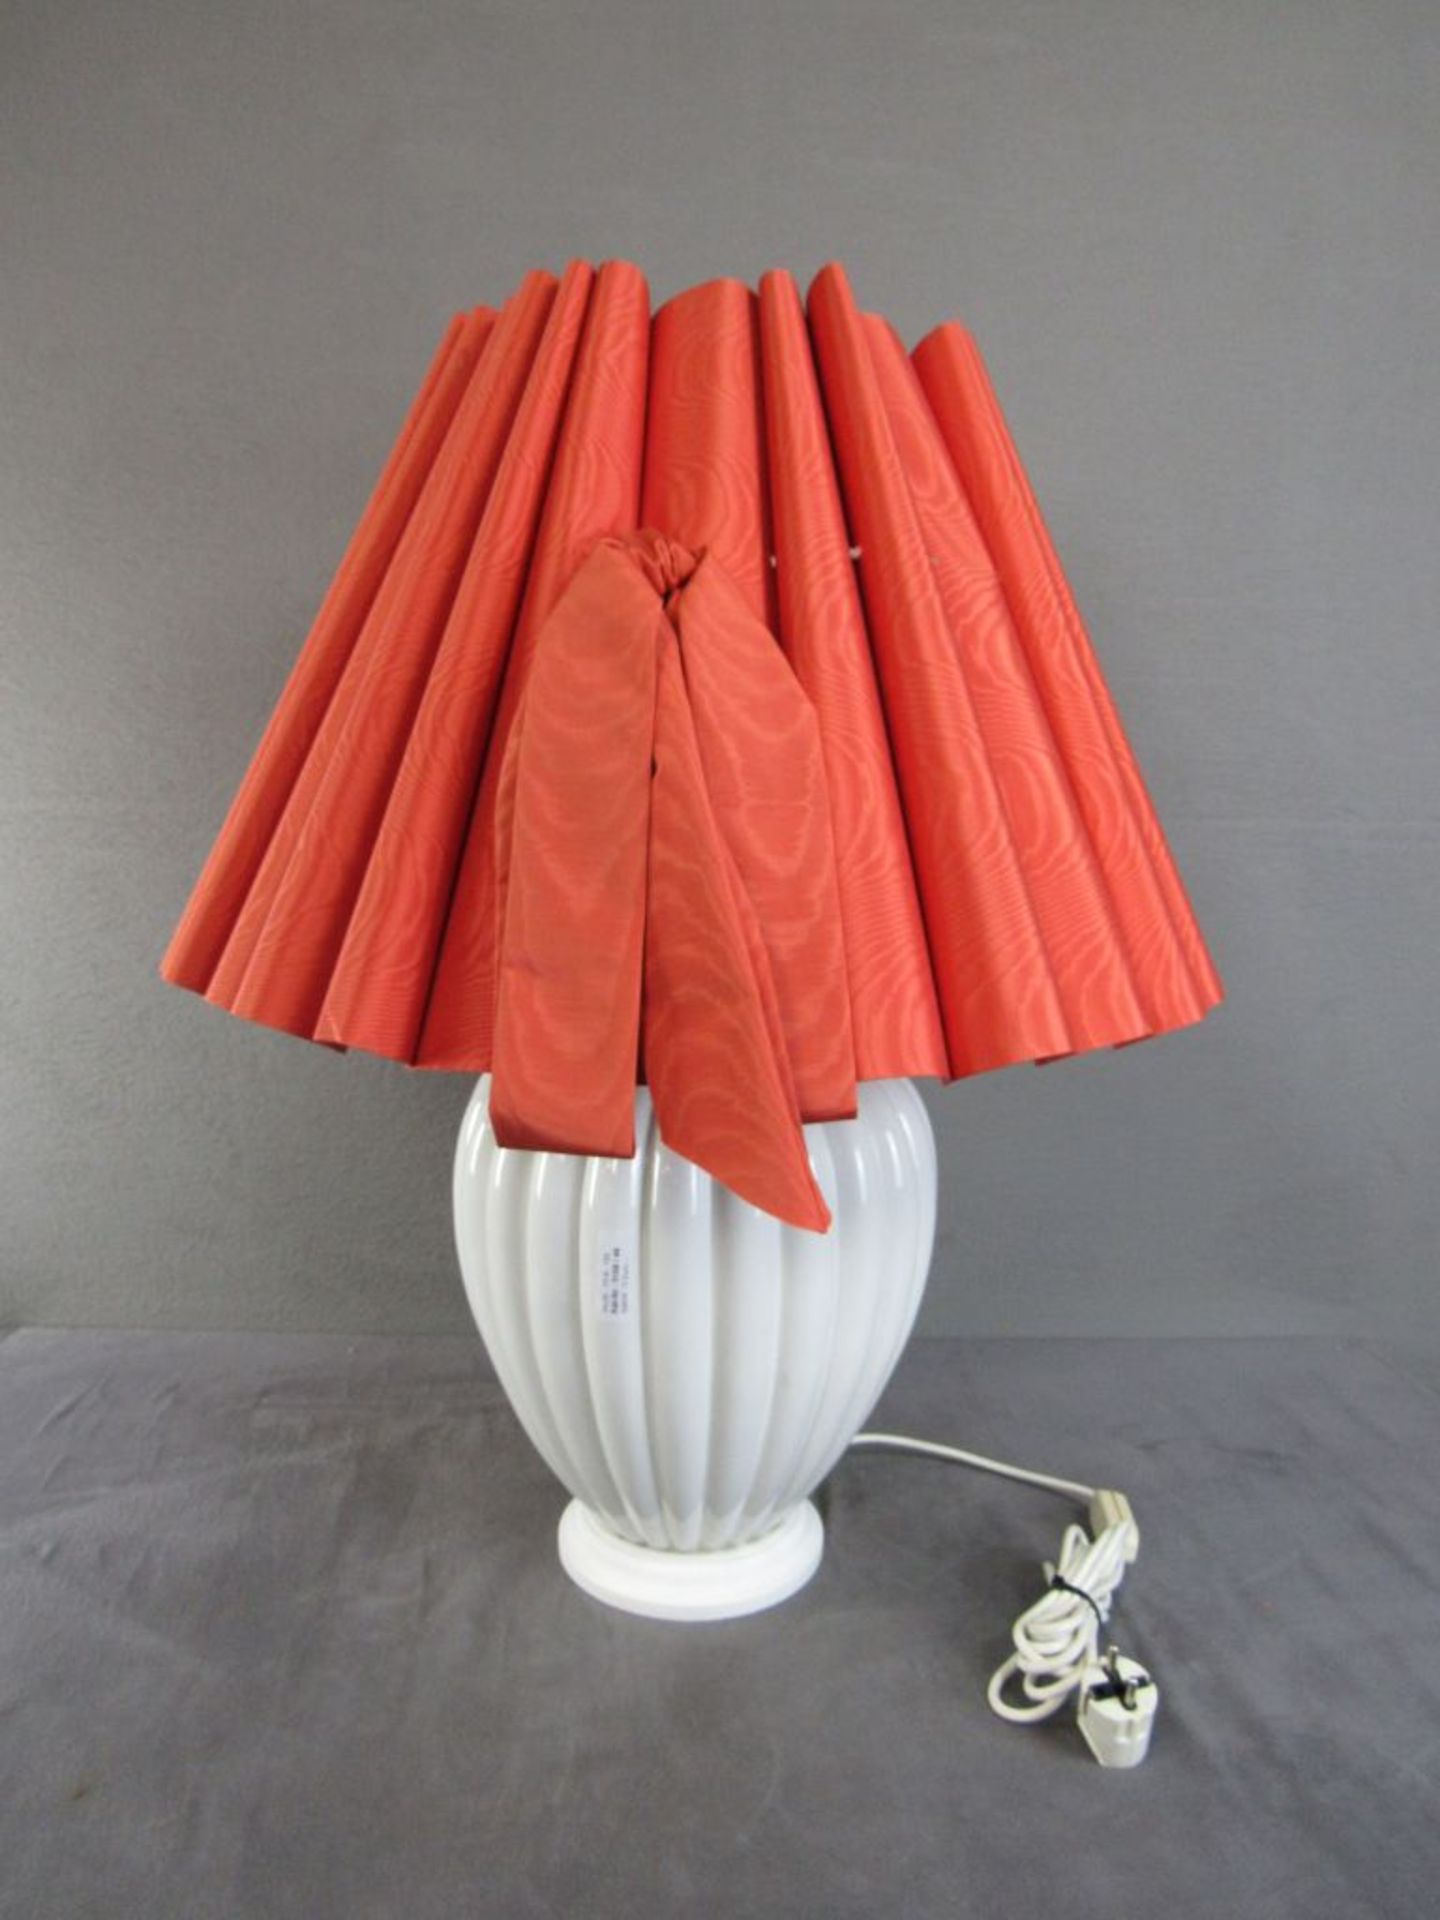 Große Tischlampe Porzellan roter Schirm 60er jahre 74cm hoch